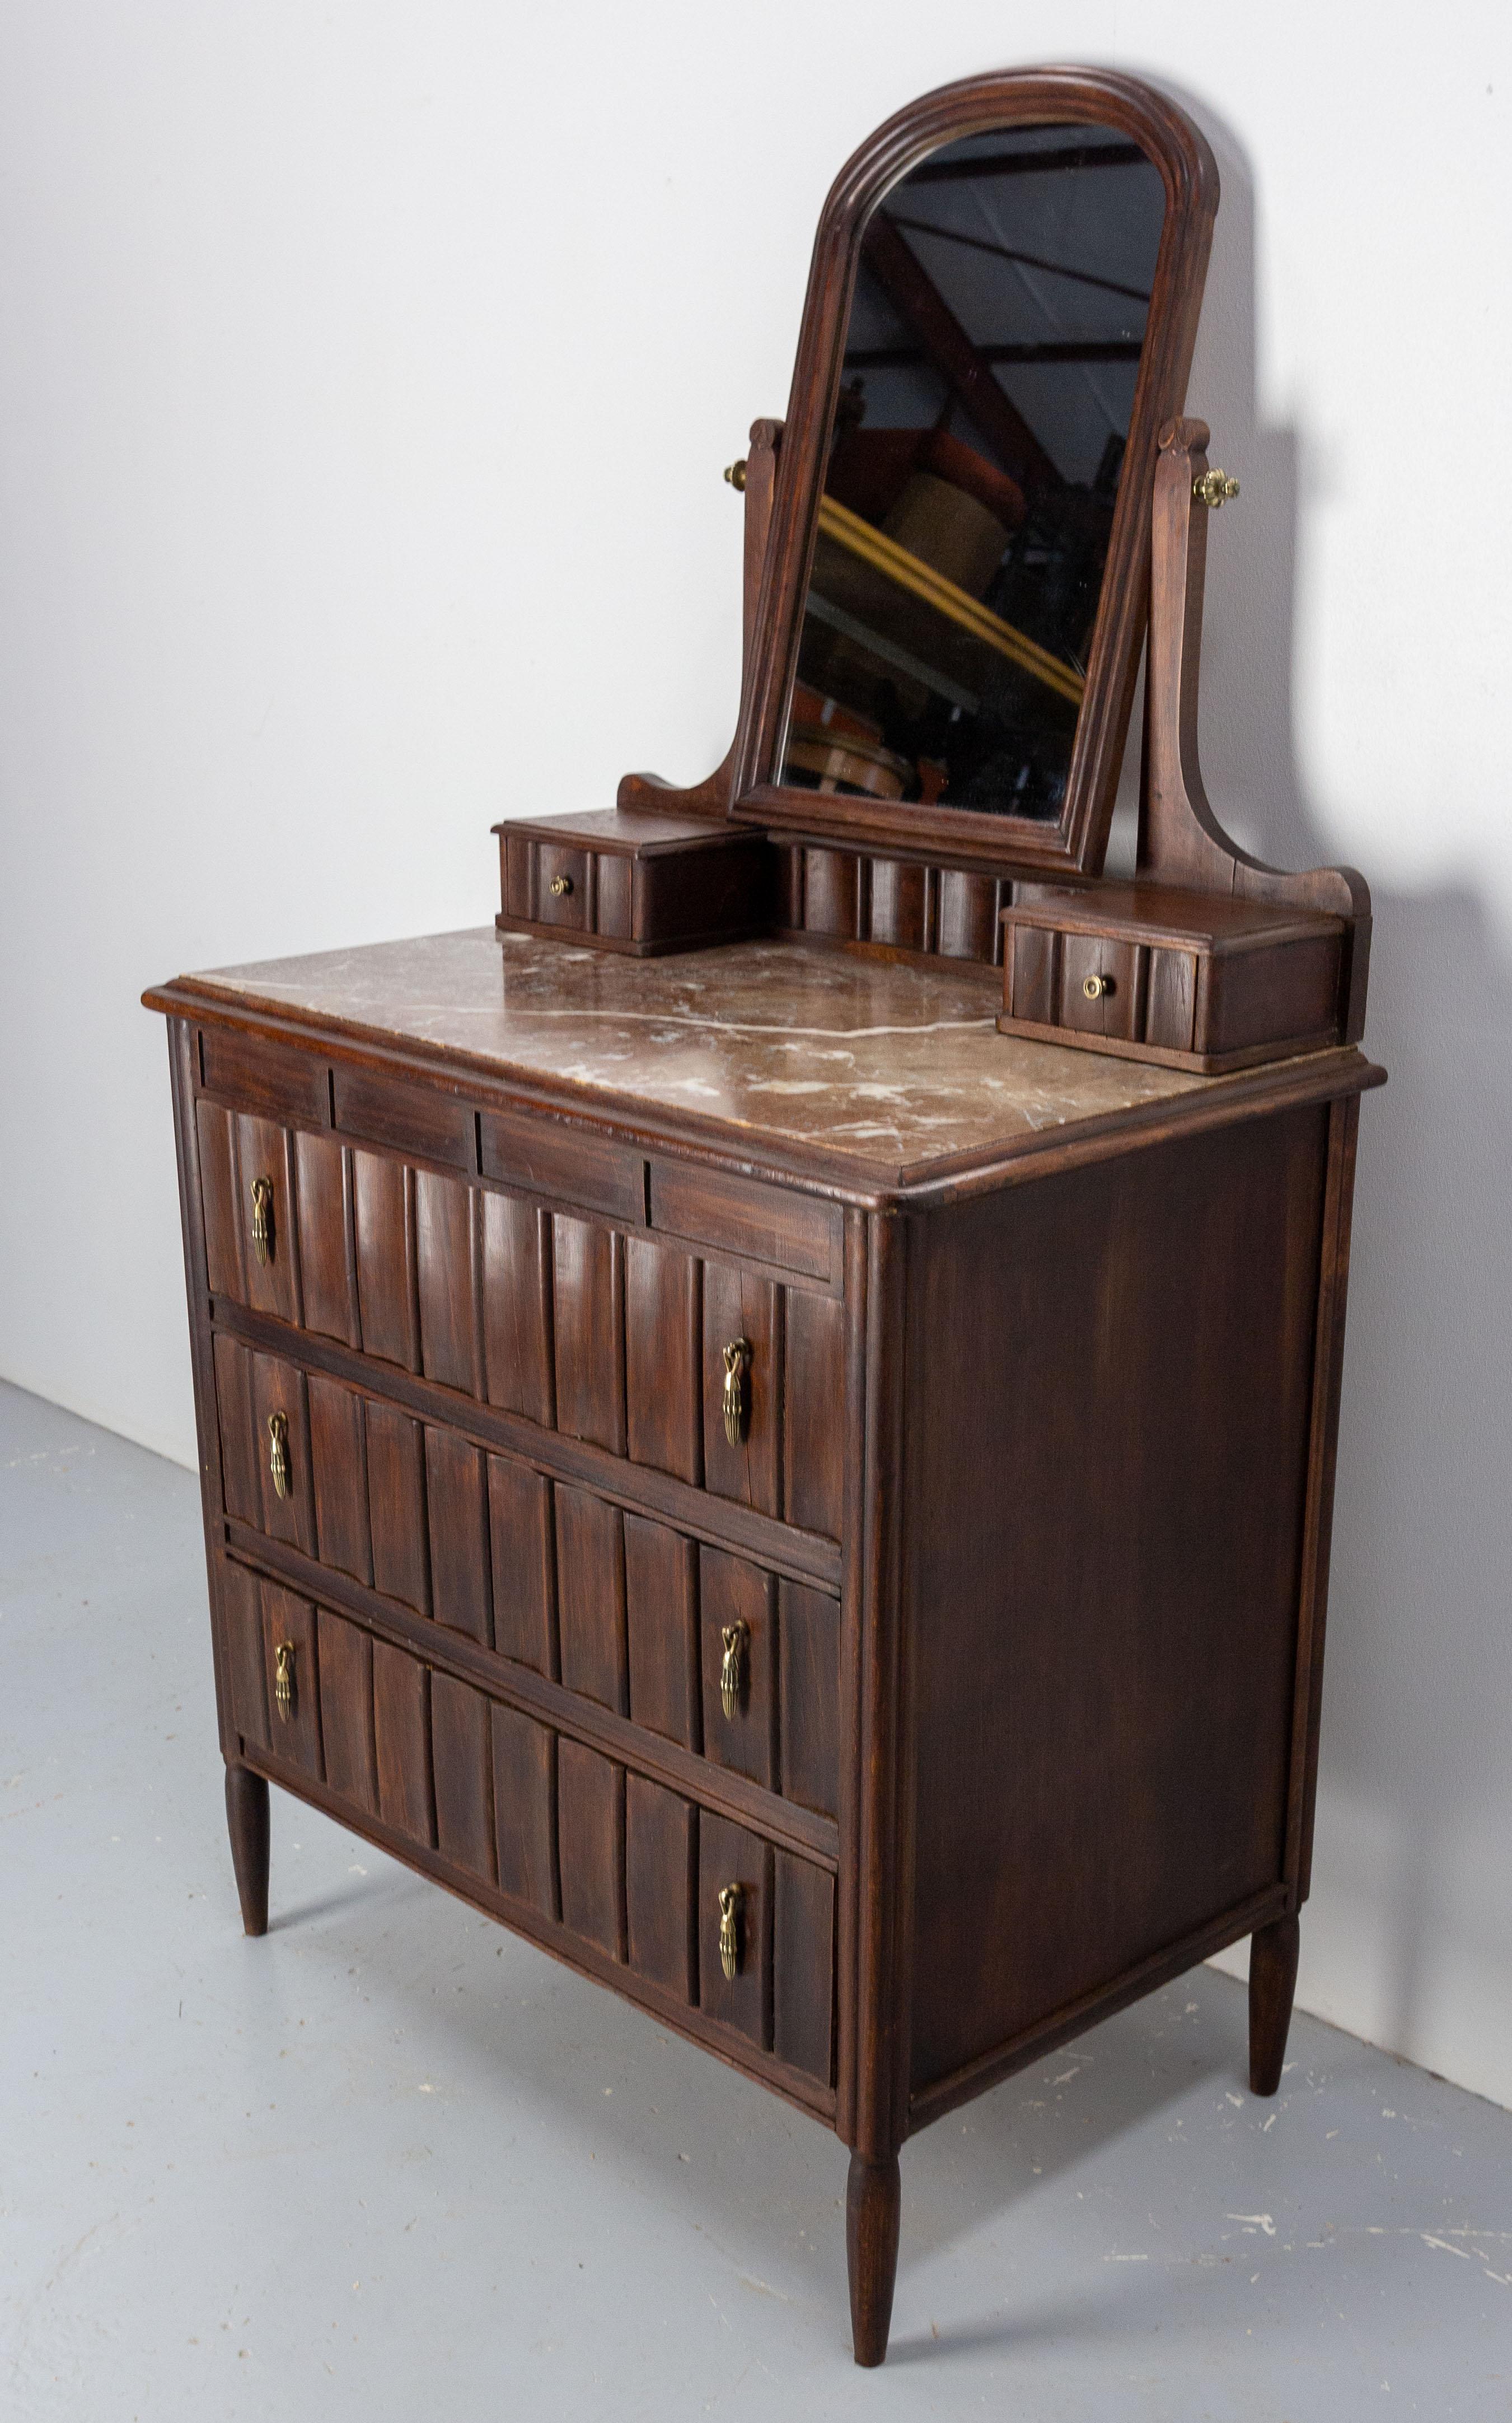 1930s dresser with mirror